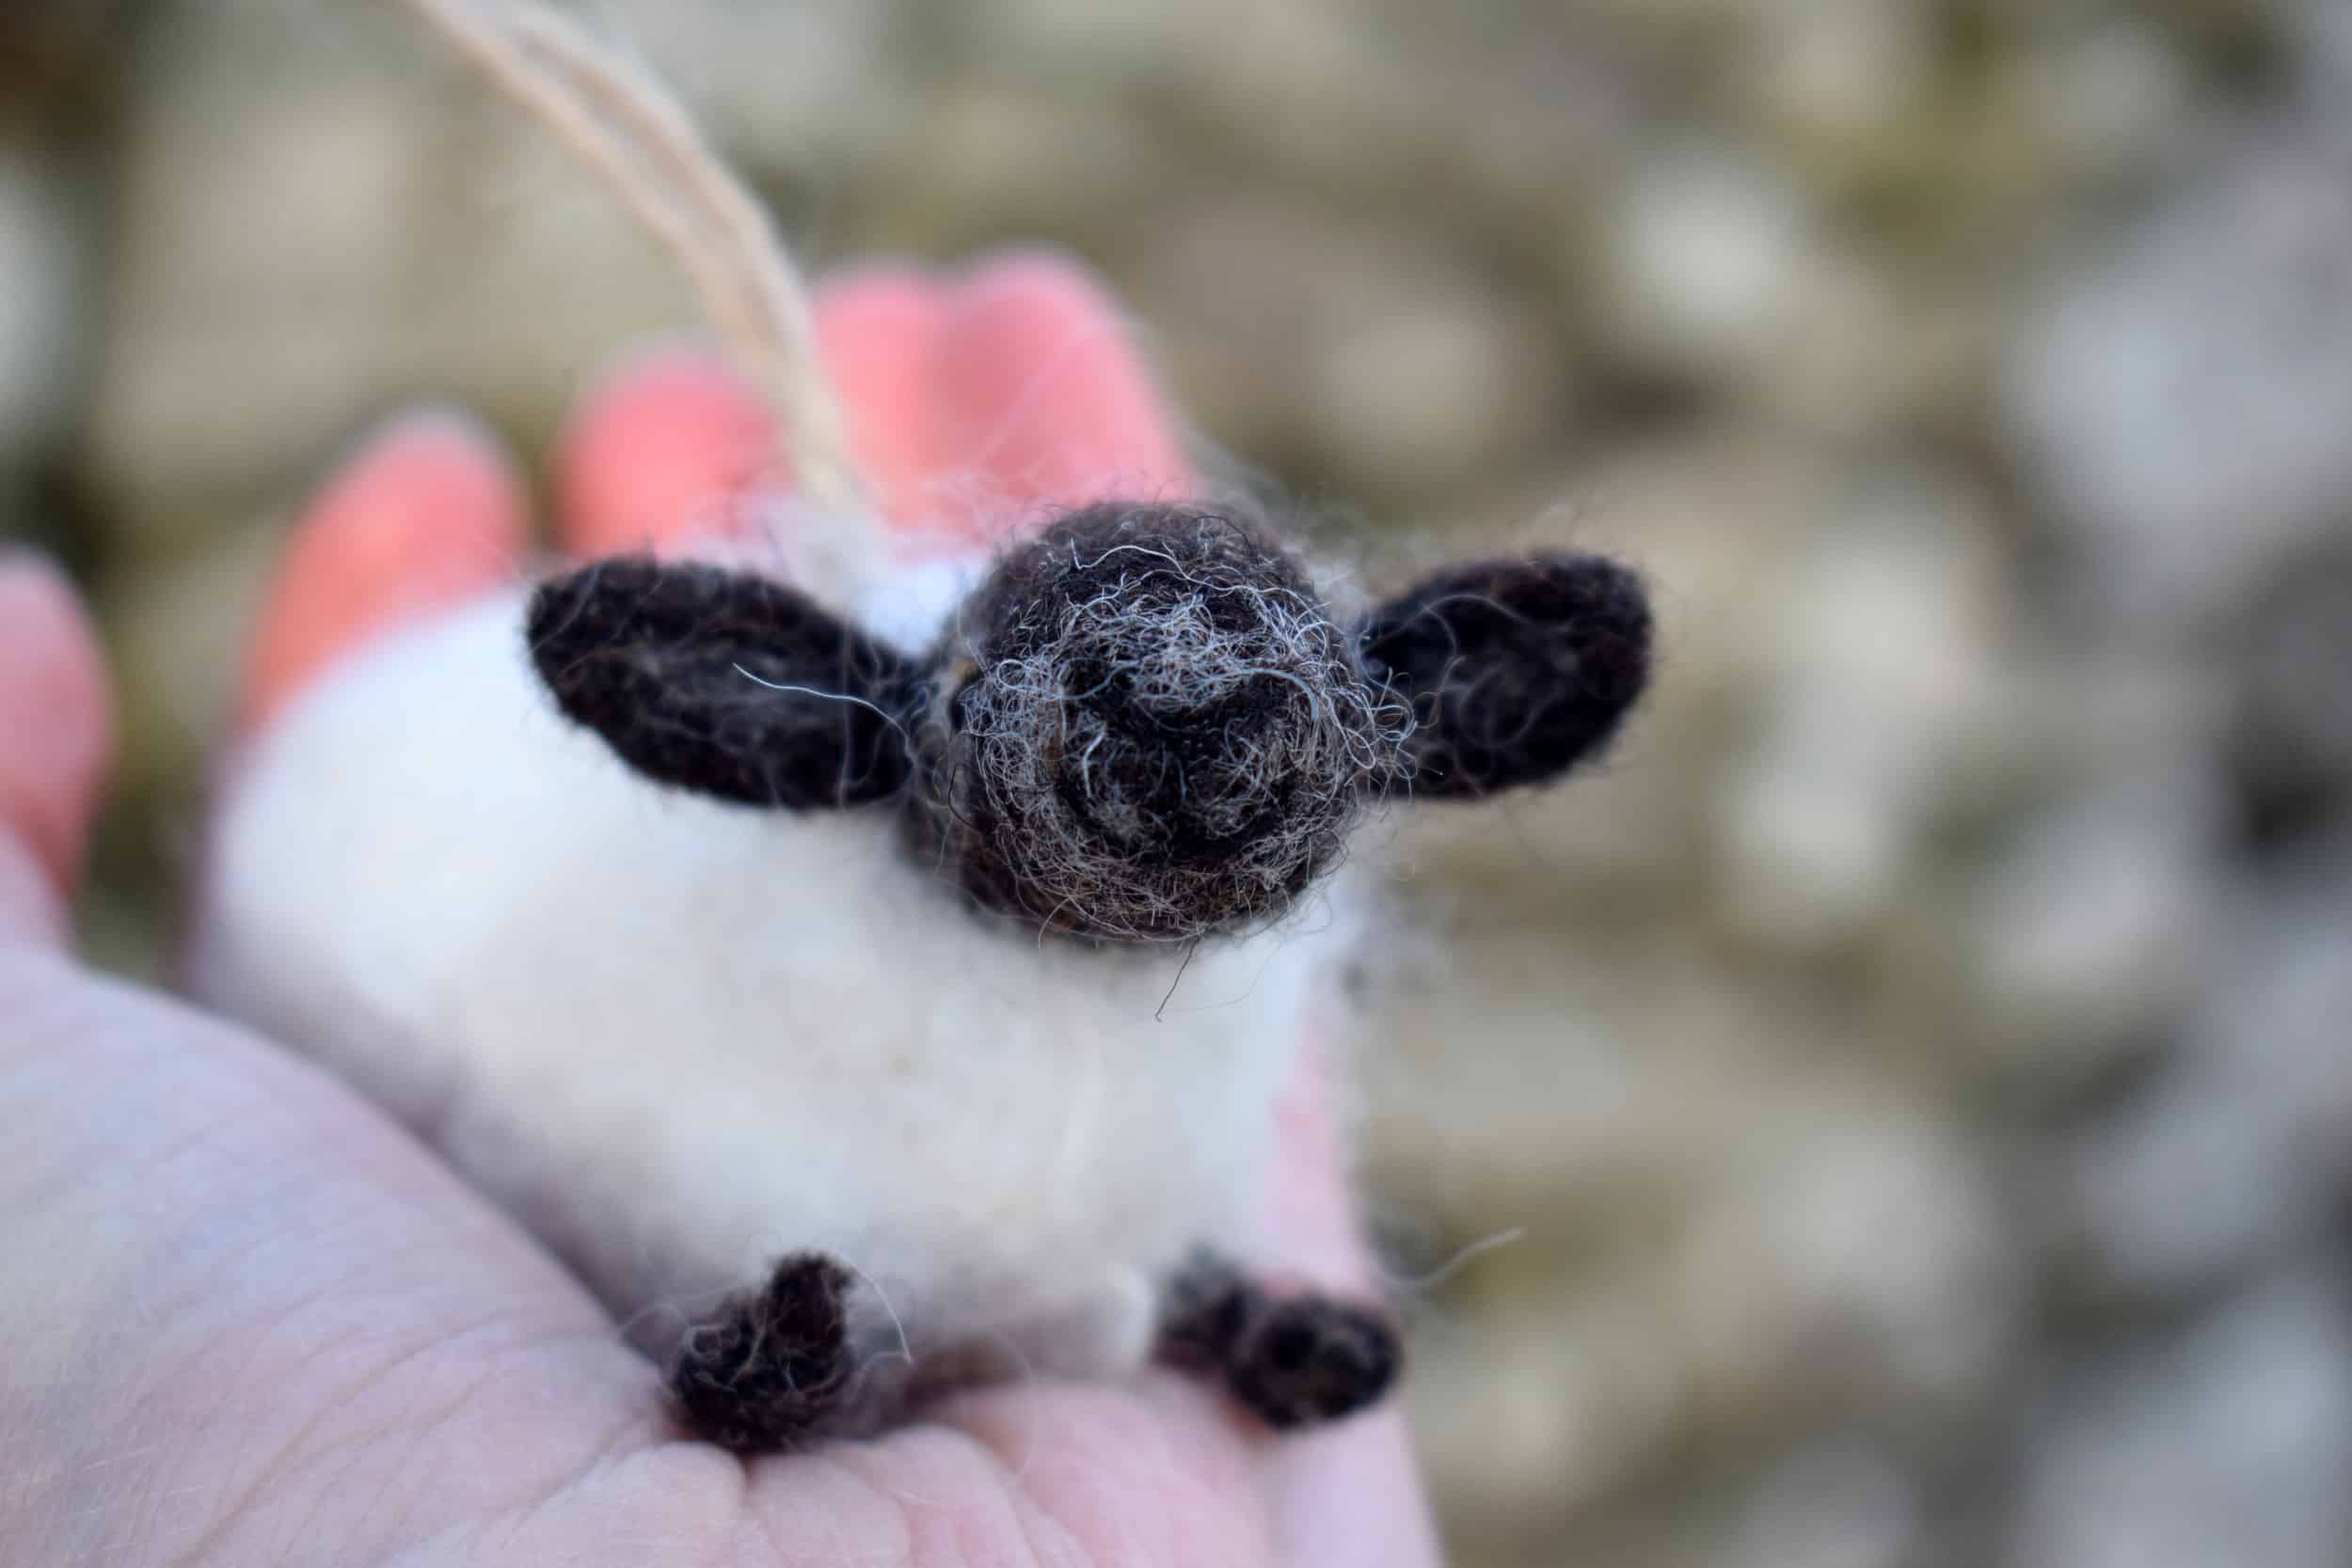 100% handmade wool felt animals crafts